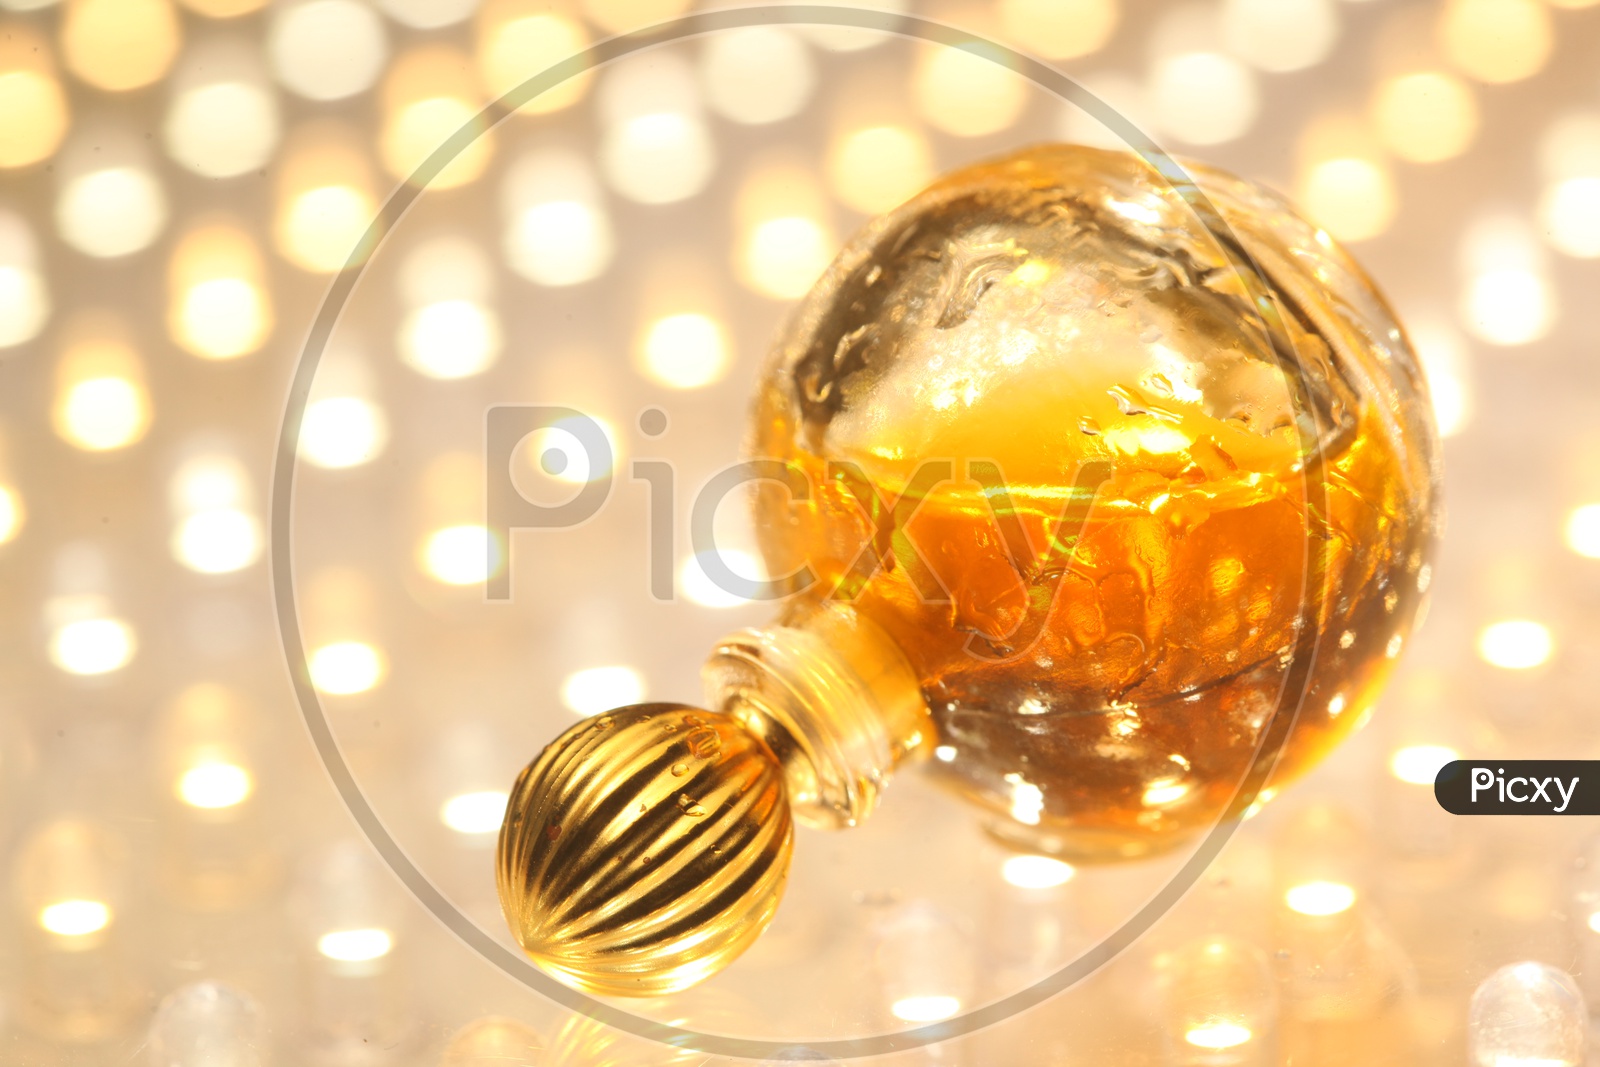 Perfume / Scent Bottle Closeup Shots